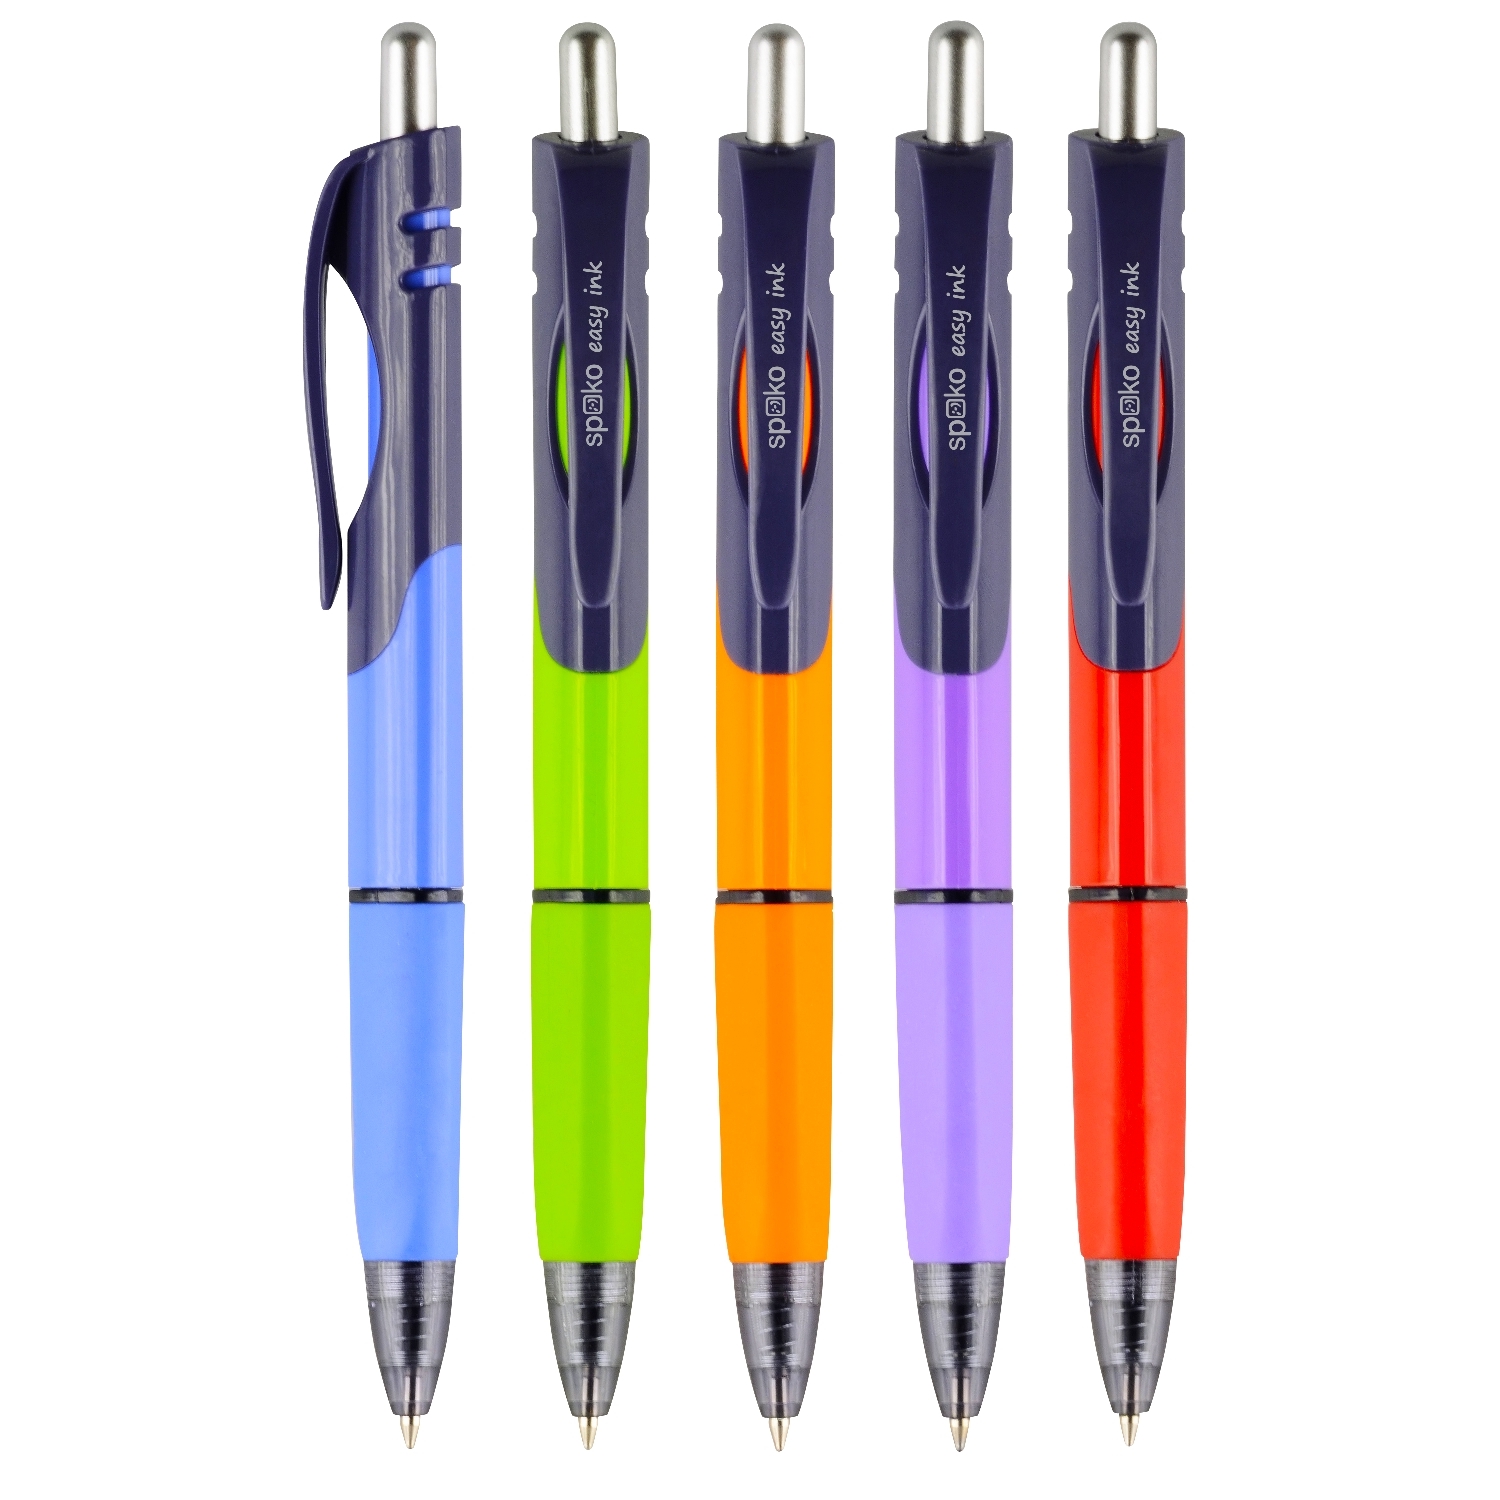 Kuličkové pero Spoko Triangle, Easy Ink, modrá náplň, mix barev, displej